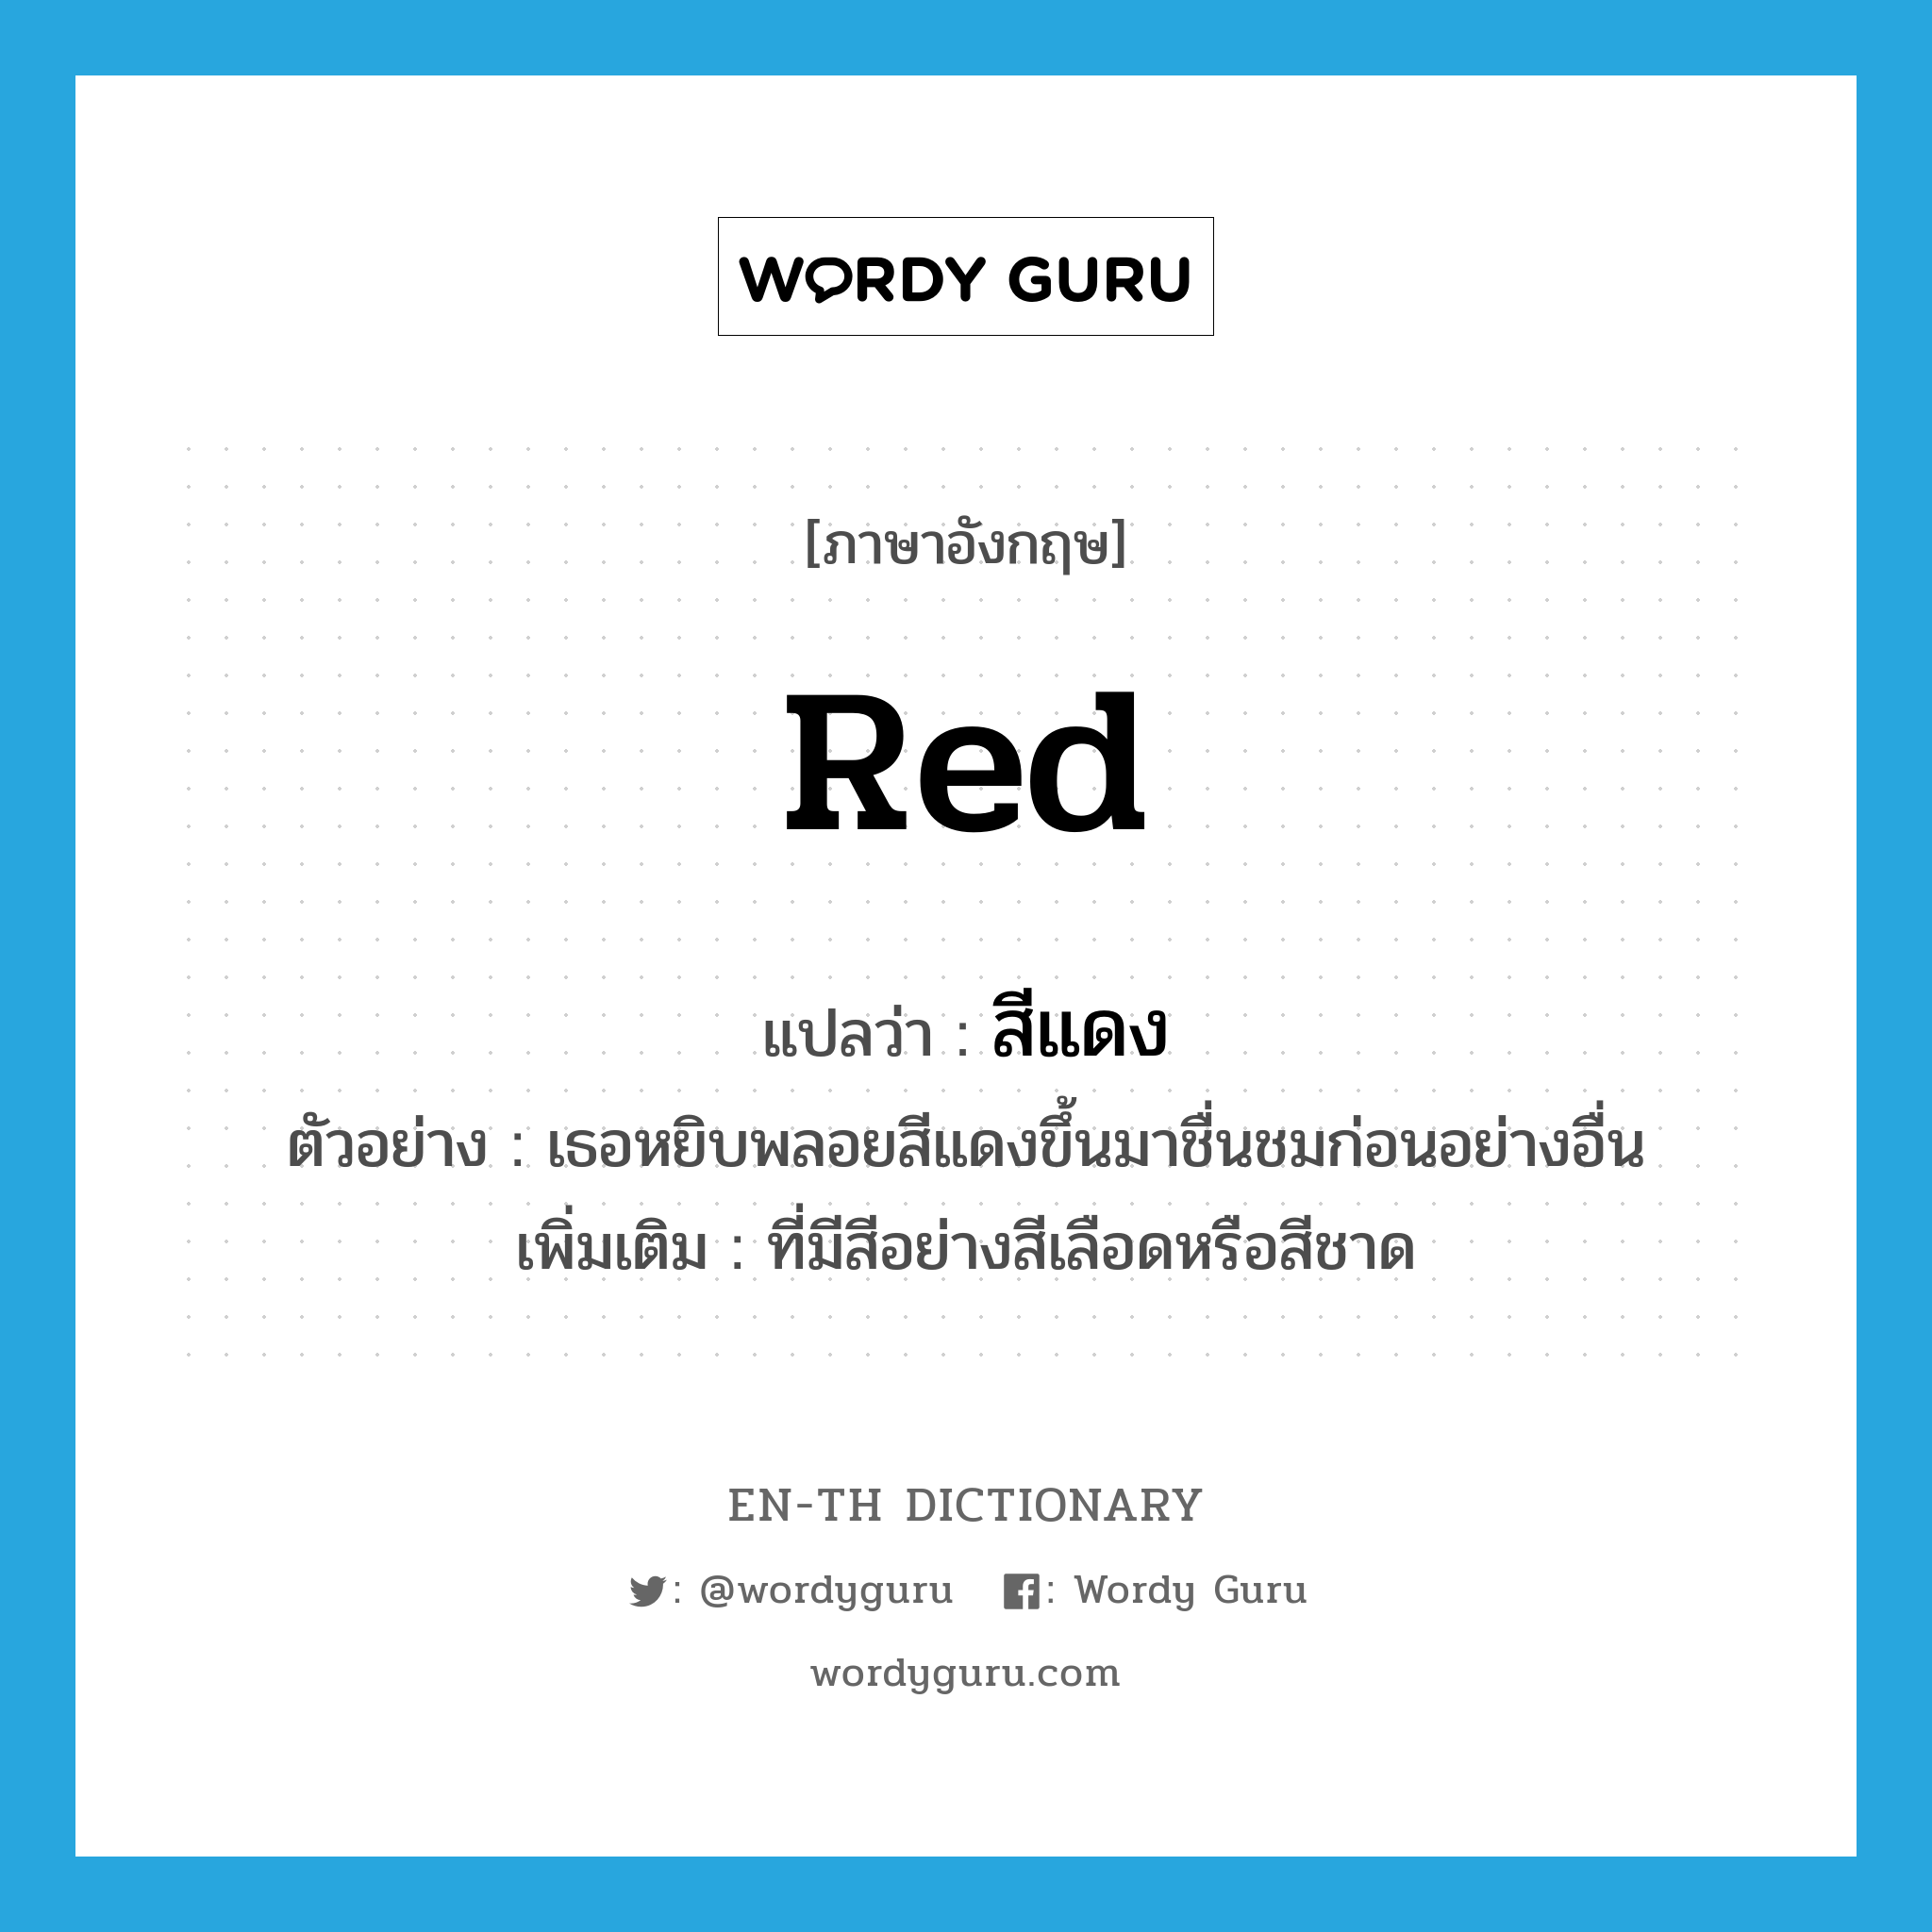 สีแดง ภาษาอังกฤษ?, คำศัพท์ภาษาอังกฤษ สีแดง แปลว่า red ประเภท ADJ ตัวอย่าง เธอหยิบพลอยสีแดงขึ้นมาชื่นชมก่อนอย่างอื่น เพิ่มเติม ที่มีสีอย่างสีเลือดหรือสีชาด หมวด ADJ